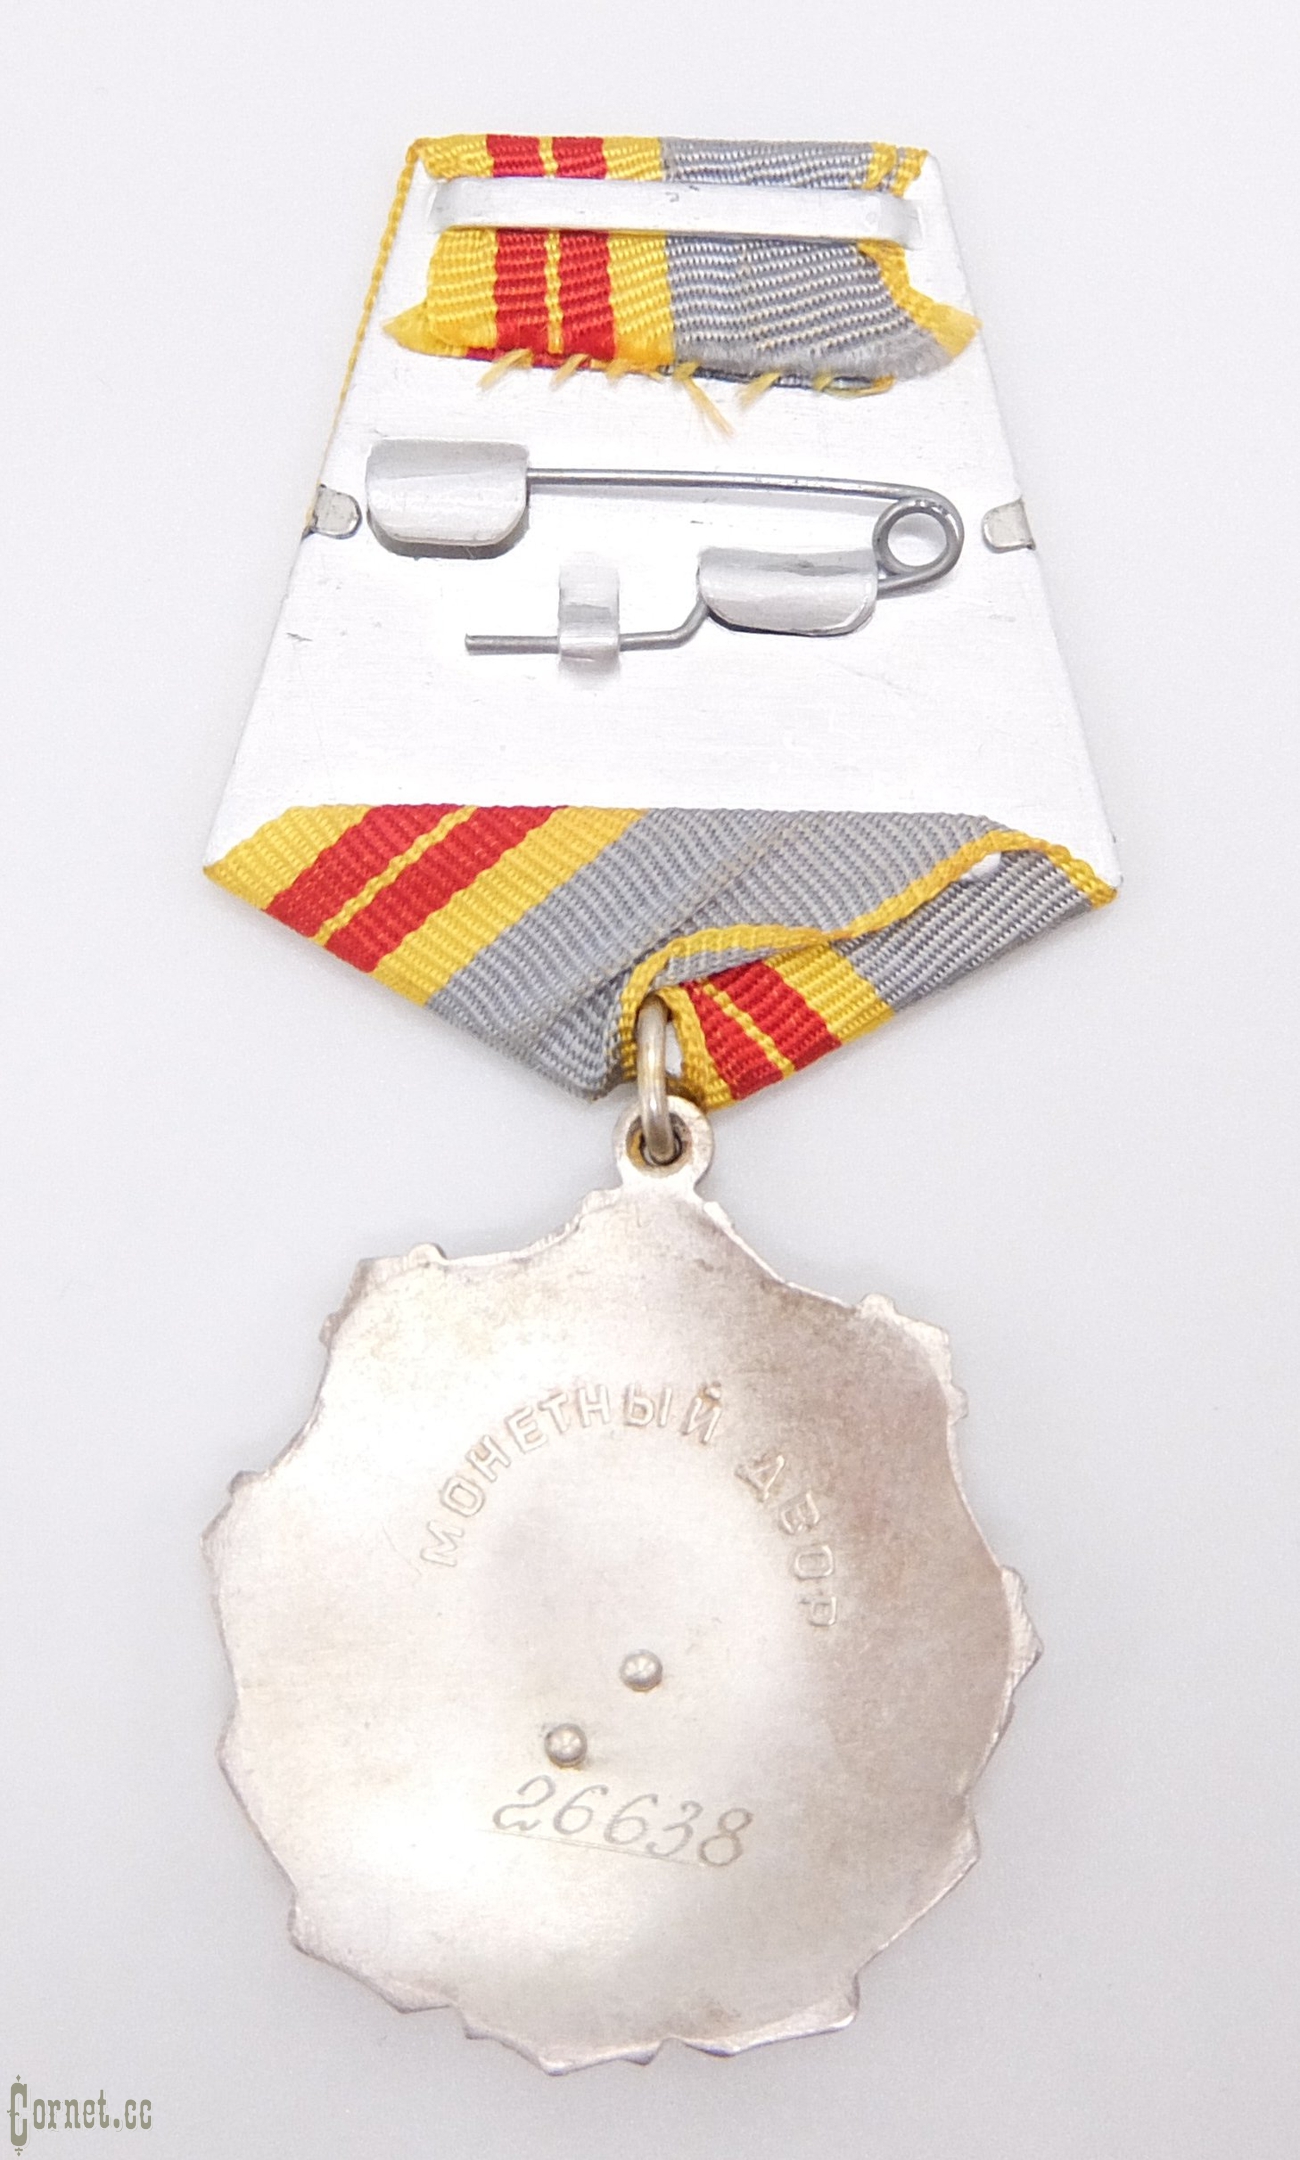 Орден Трудовой Славы 2-ой степени